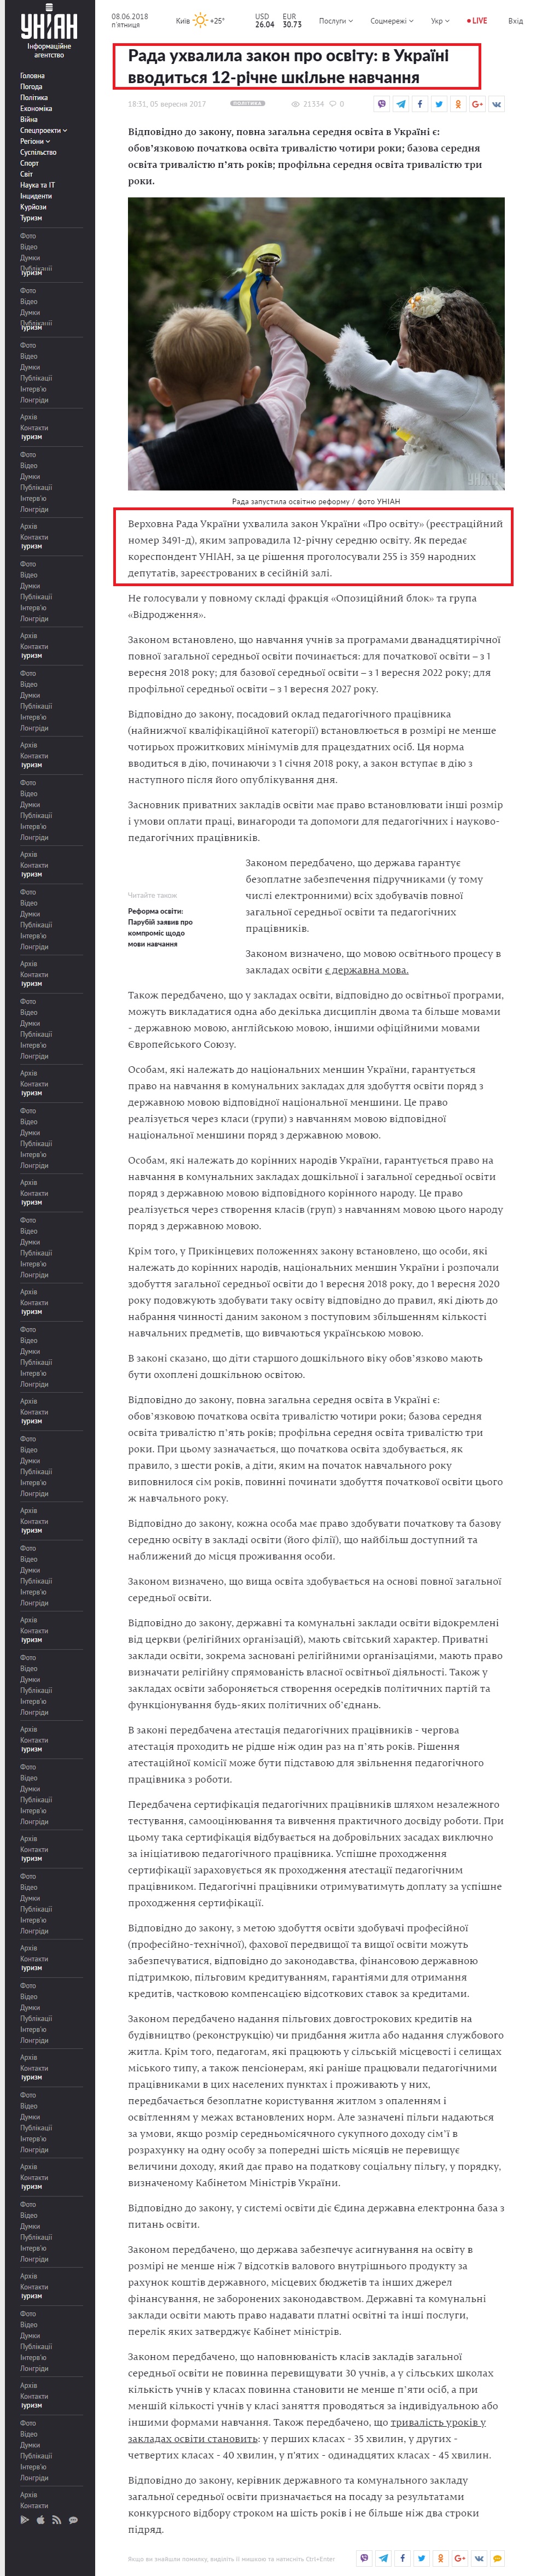 https://www.unian.ua/politics/2117271-rada-uhvalila-zakon-pro-osvitu-v-ukrajini-vvoditsya-12-richne-shkilne-navchannya.html